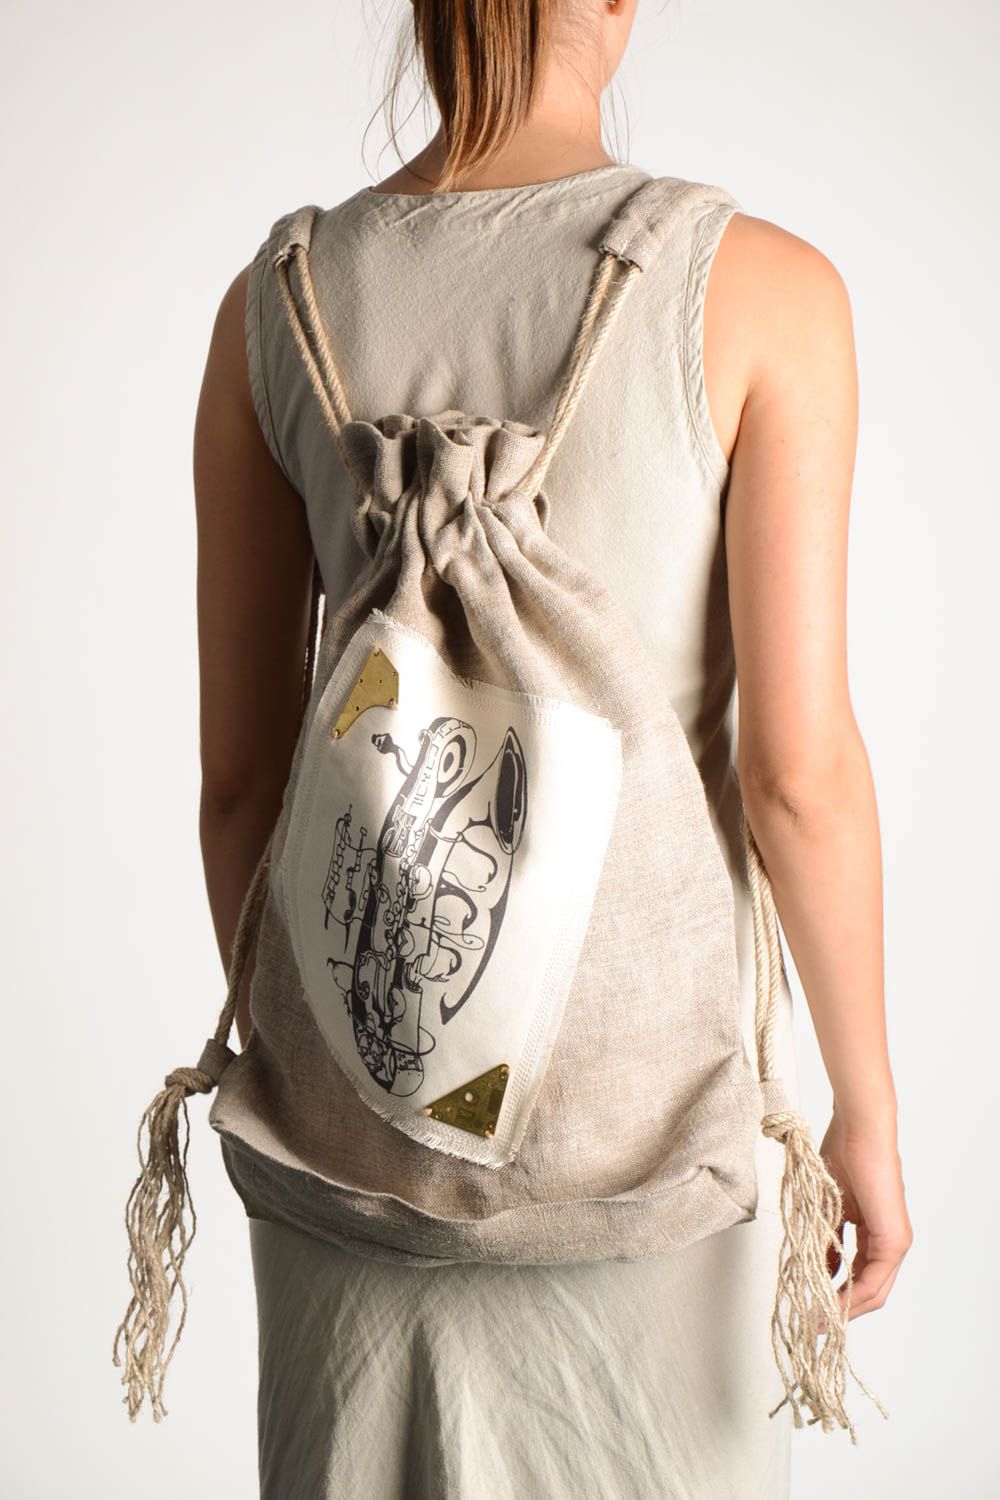 Сумка ручной работы текстильный рюкзак большая сумка стильная красивая авторская фото 1